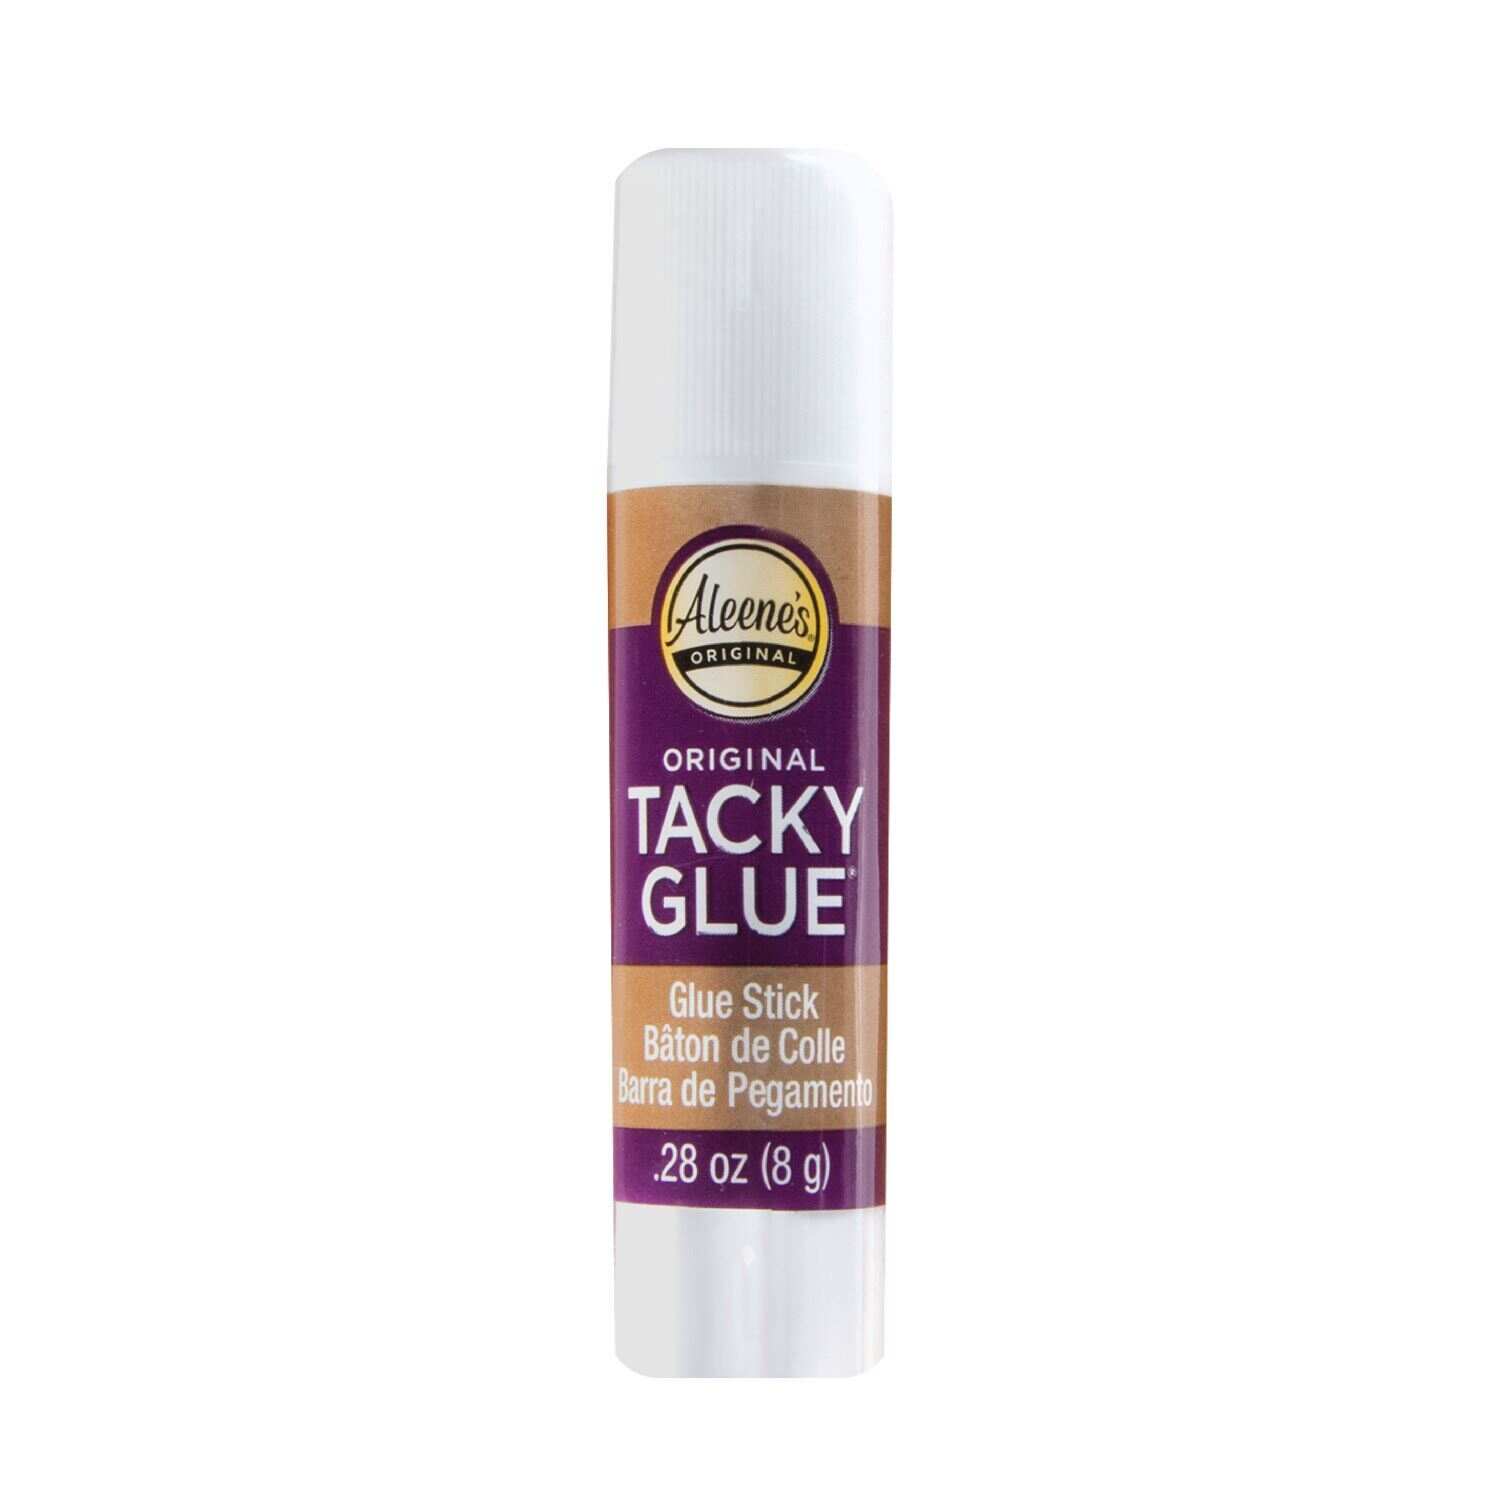 Aleene's Original Tacky Glue - 2 sticks, 0.564 oz each